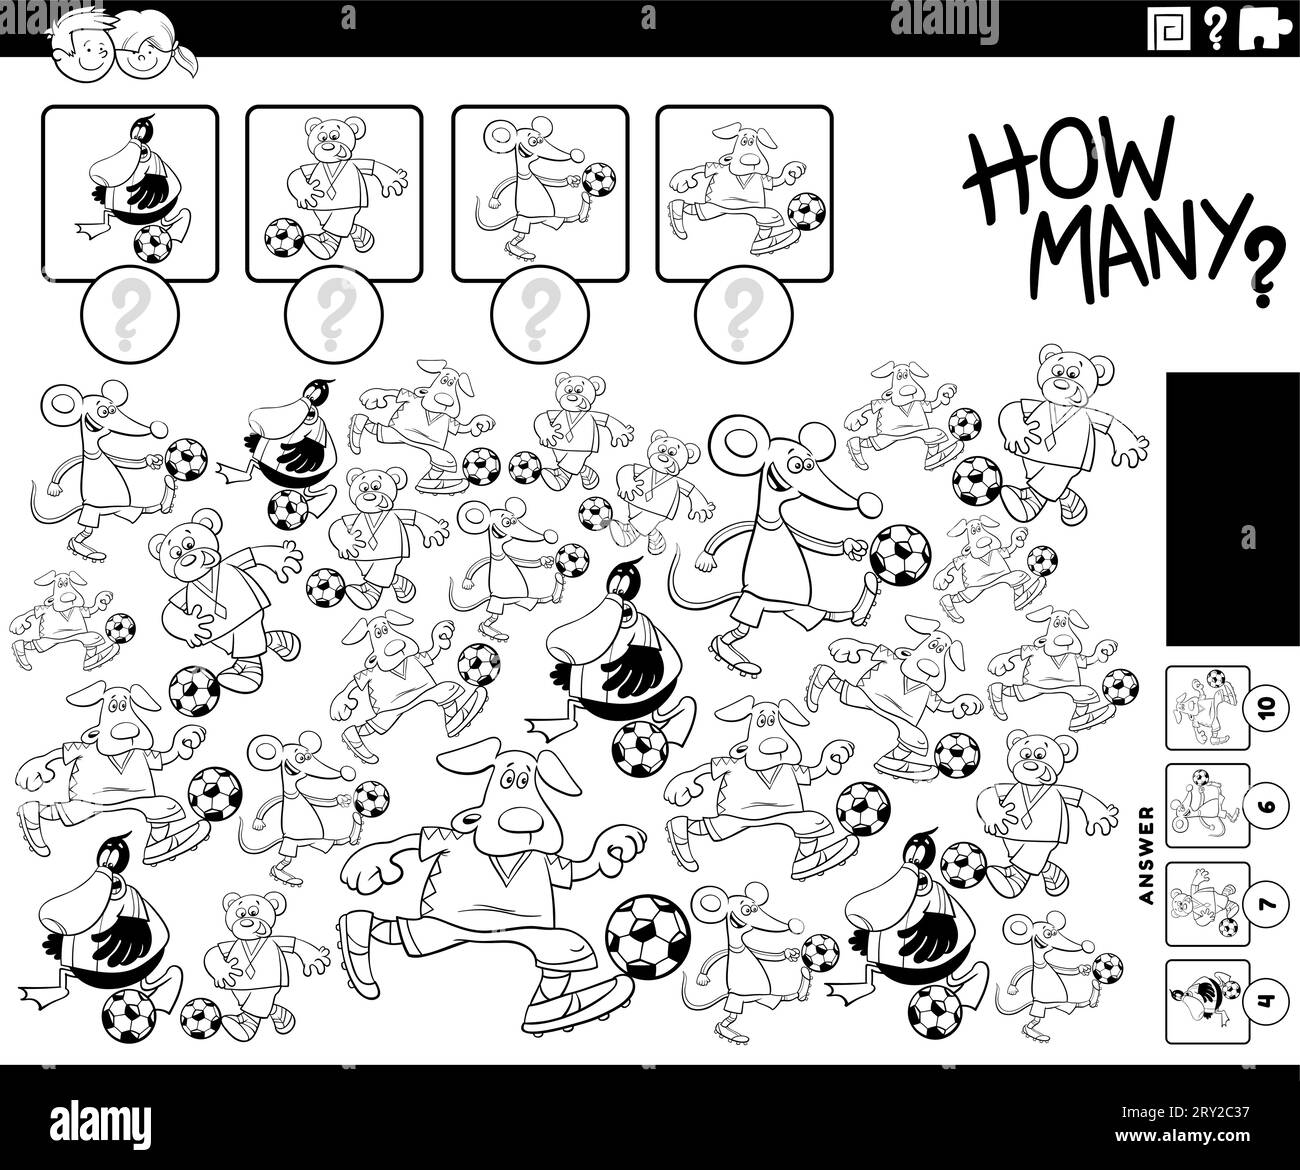 Illustration en noir et blanc de l'activité éducative de comptage avec des personnages animaux de bande dessinée jouant à la page de coloriage de football Illustration de Vecteur